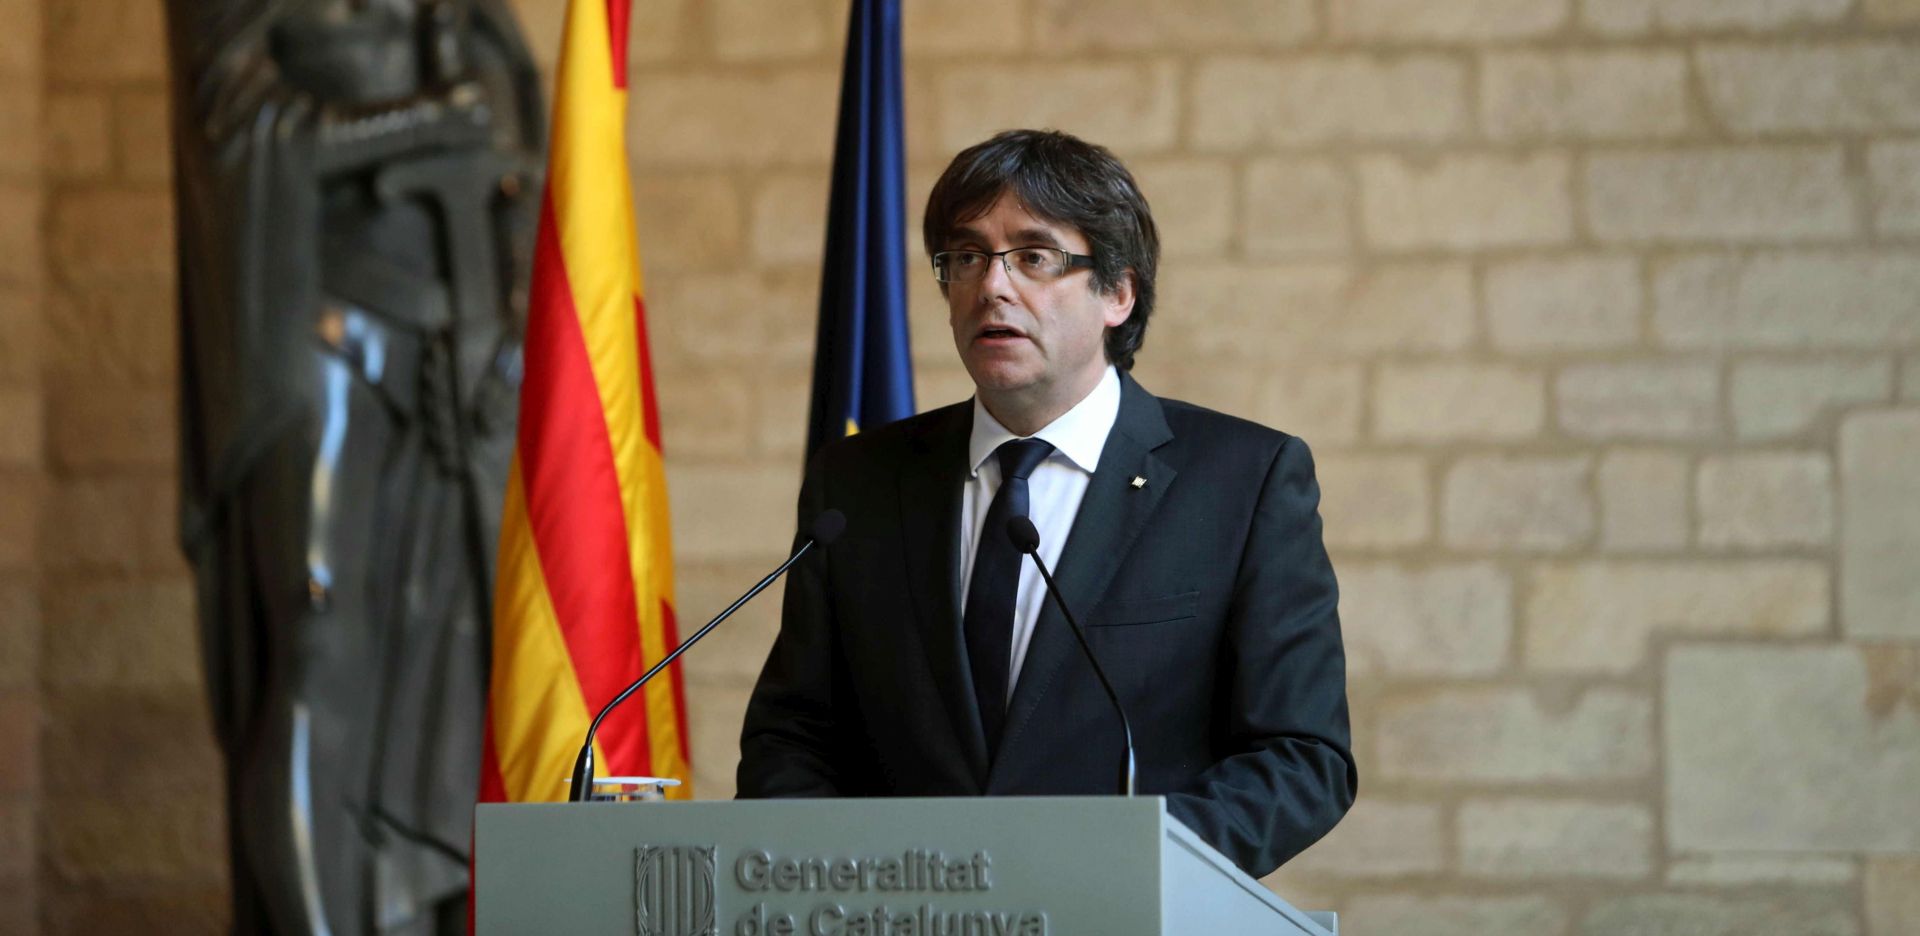 VIDEO: EKSHIBICIONIST BEZ POKRIĆA? Što će biti s katalonskim predsjednikom Puigdemontom?